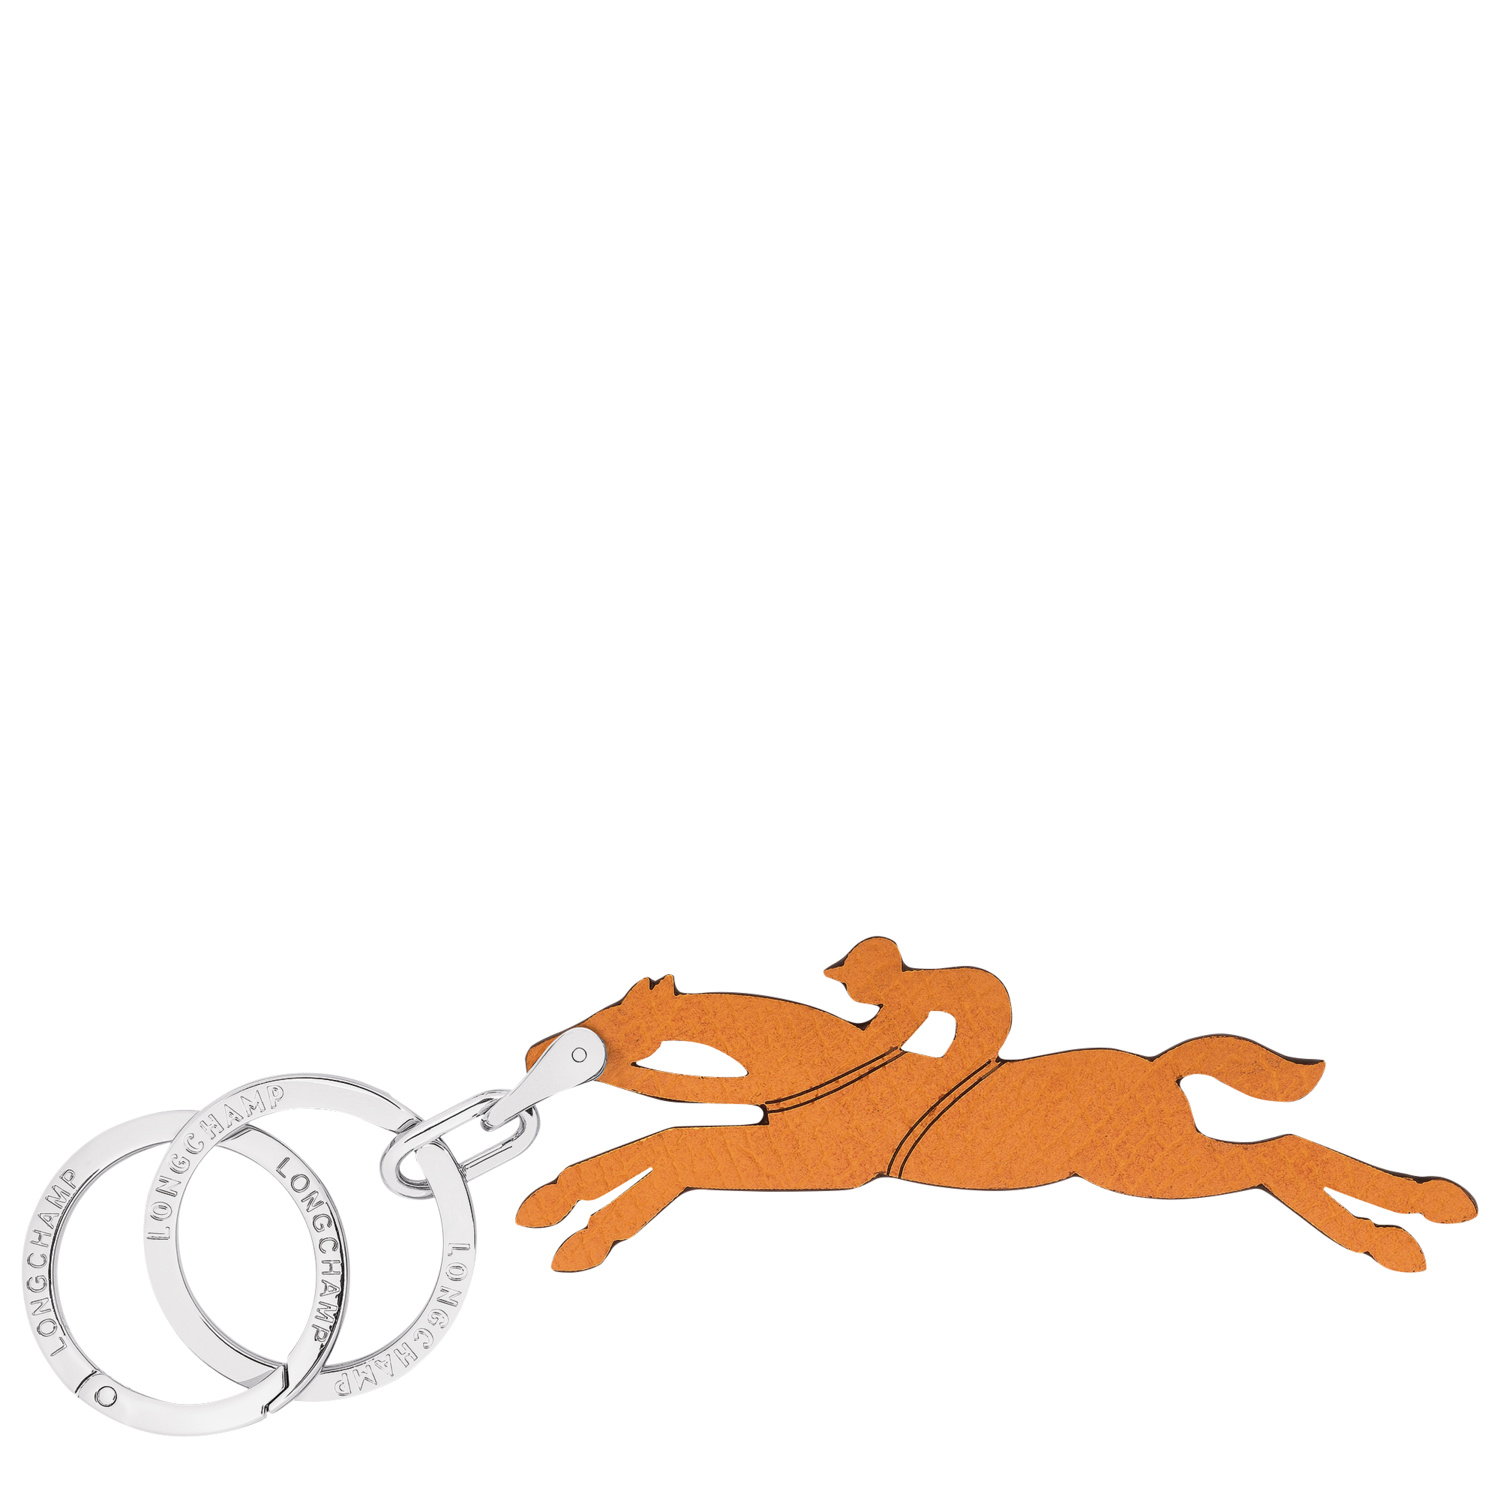 Longchamp Key Rings Le Pliage In Apricot